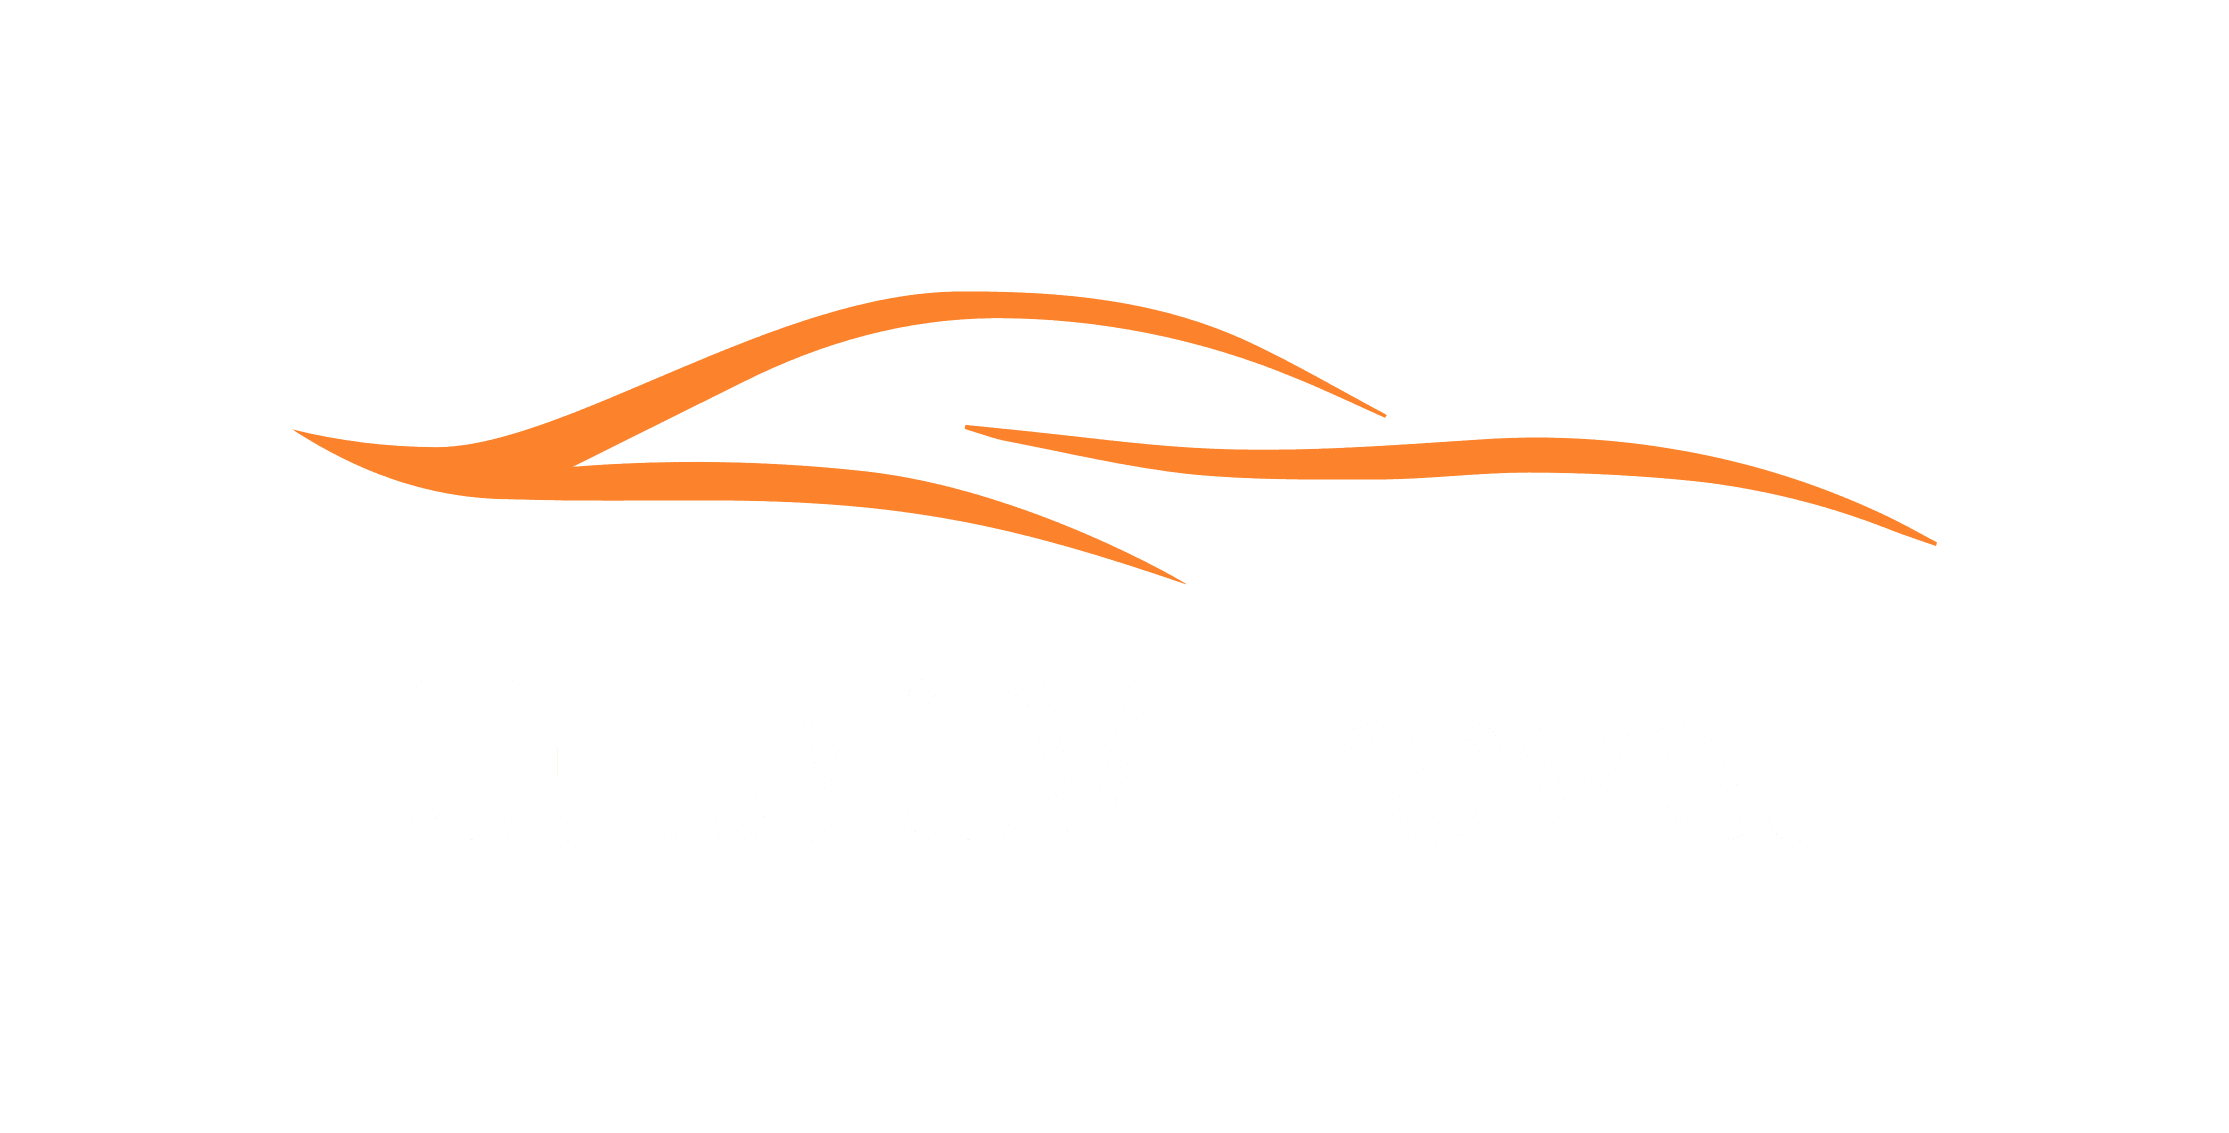 Elite EV Travel